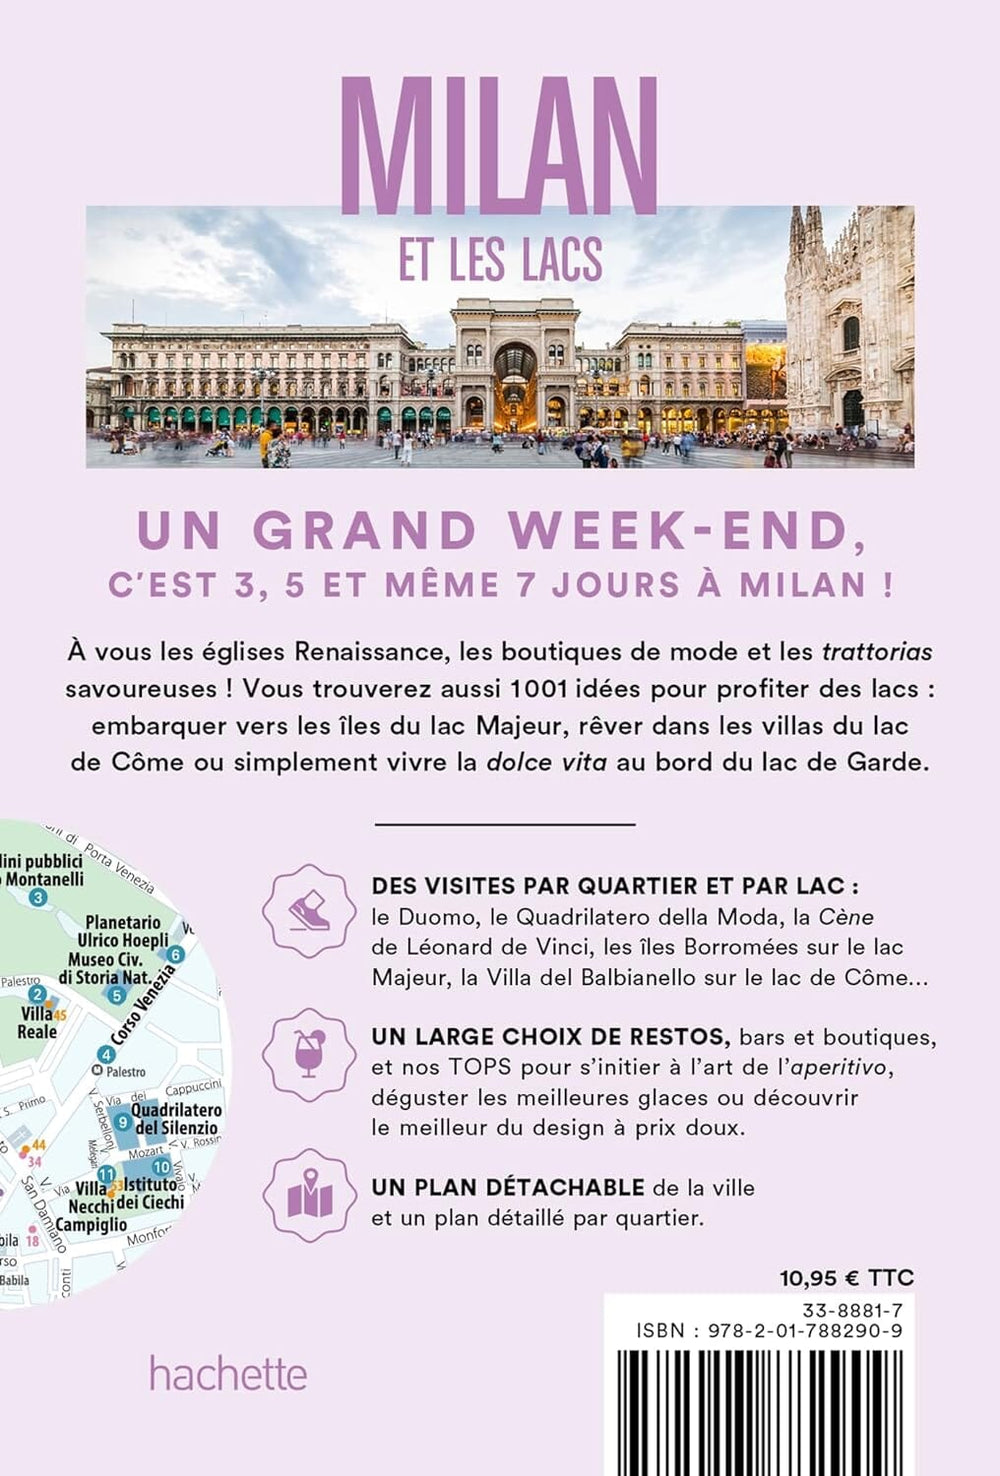 Guide de voyage de poche - Un Grand Week-end à Milan et les lacs 2024 | Hachette guide de voyage Hachette 